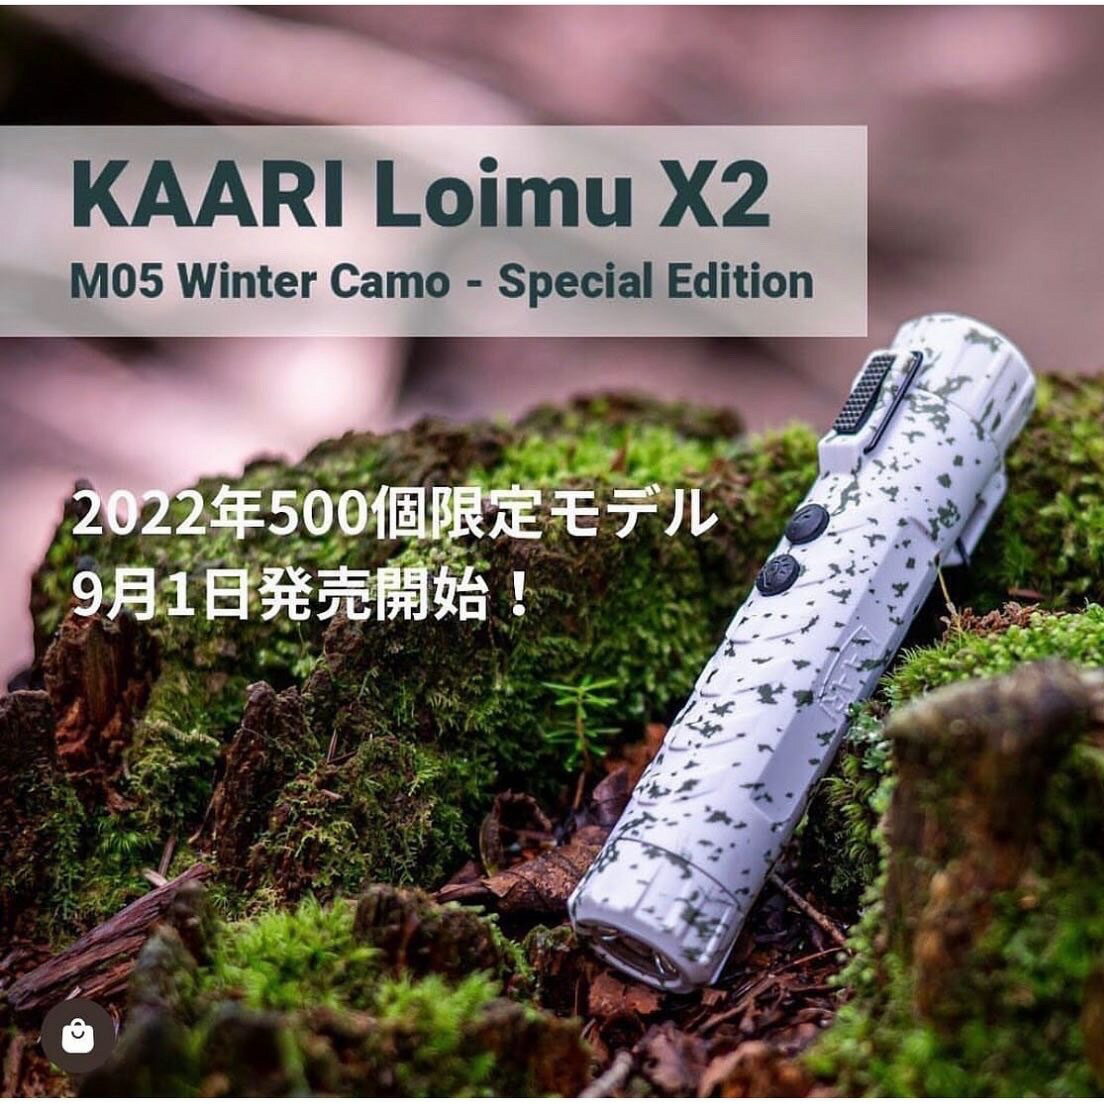 カーリ 充電式プラズマライター カーリー ロイムX2プラズマライター KAARI LOIMU X2 M05 Winter Camo 防水 LEDライト 2022年限定モデル キャンプ アウトドア